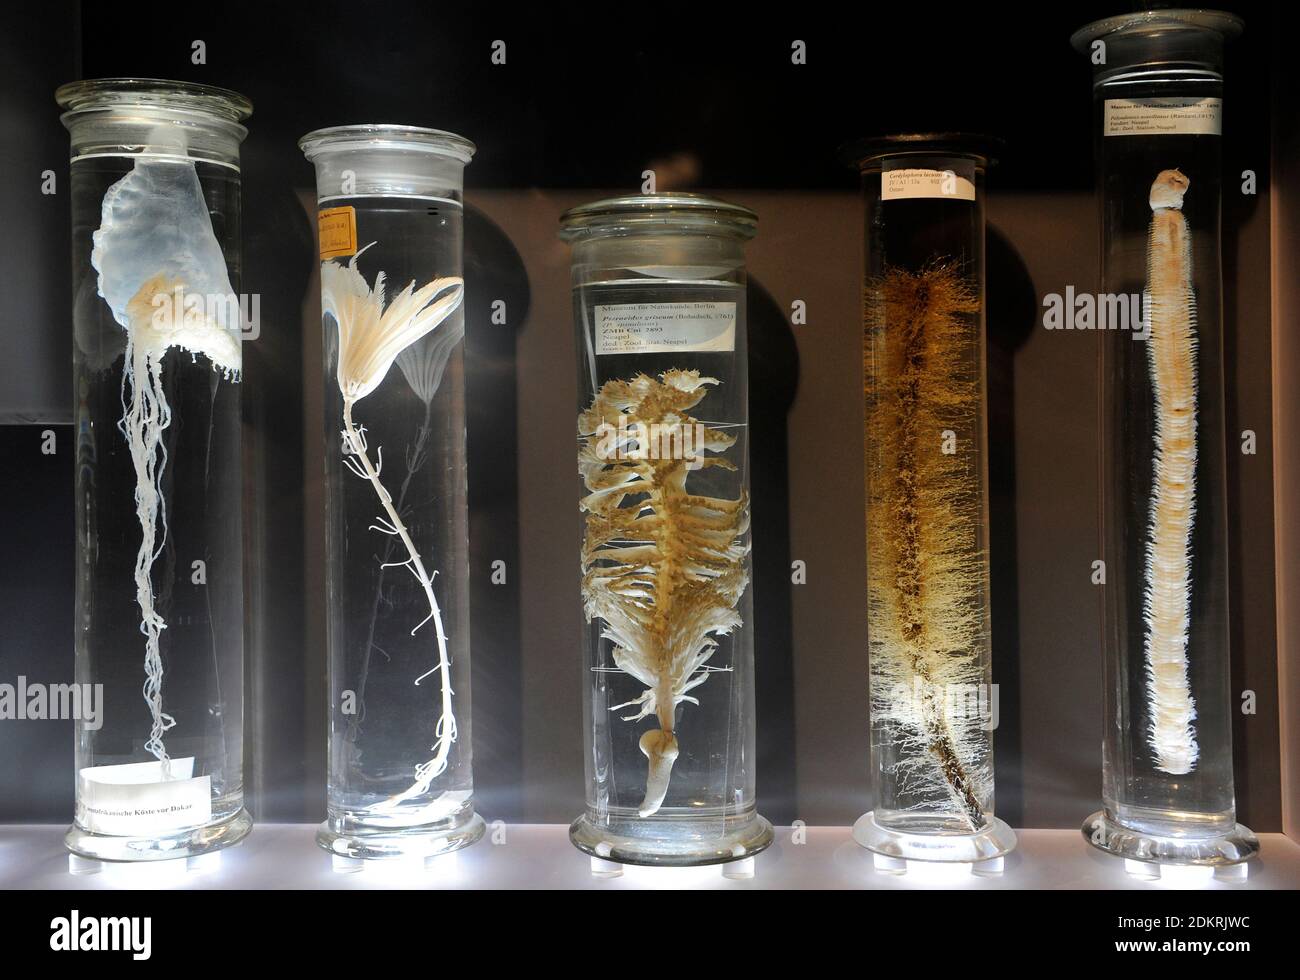 Pots en verre avec des spécimens d'animaux conservés à l'alcool. Exposition dans les collections humides. Musée d'Histoire naturelle, Berlin, Allemagne. Banque D'Images